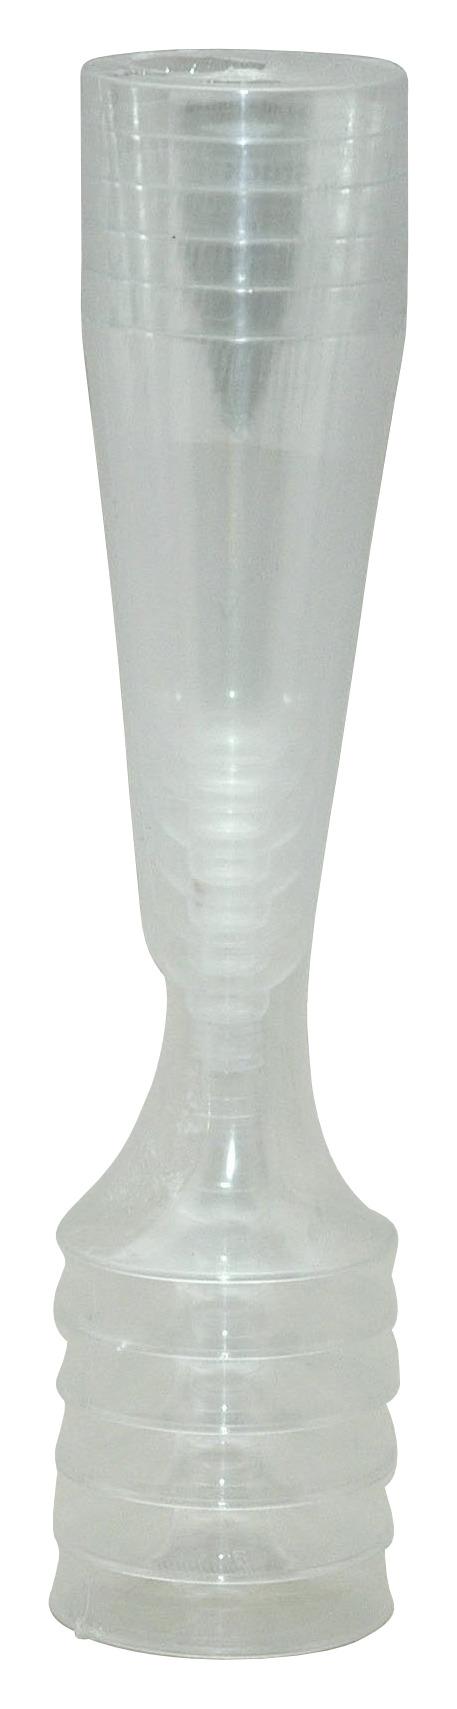 Einweg-Sektglas 6 Stk. 150 ml - Klar, KONVENTIONELL, Kunststoff (5,5/27cm)